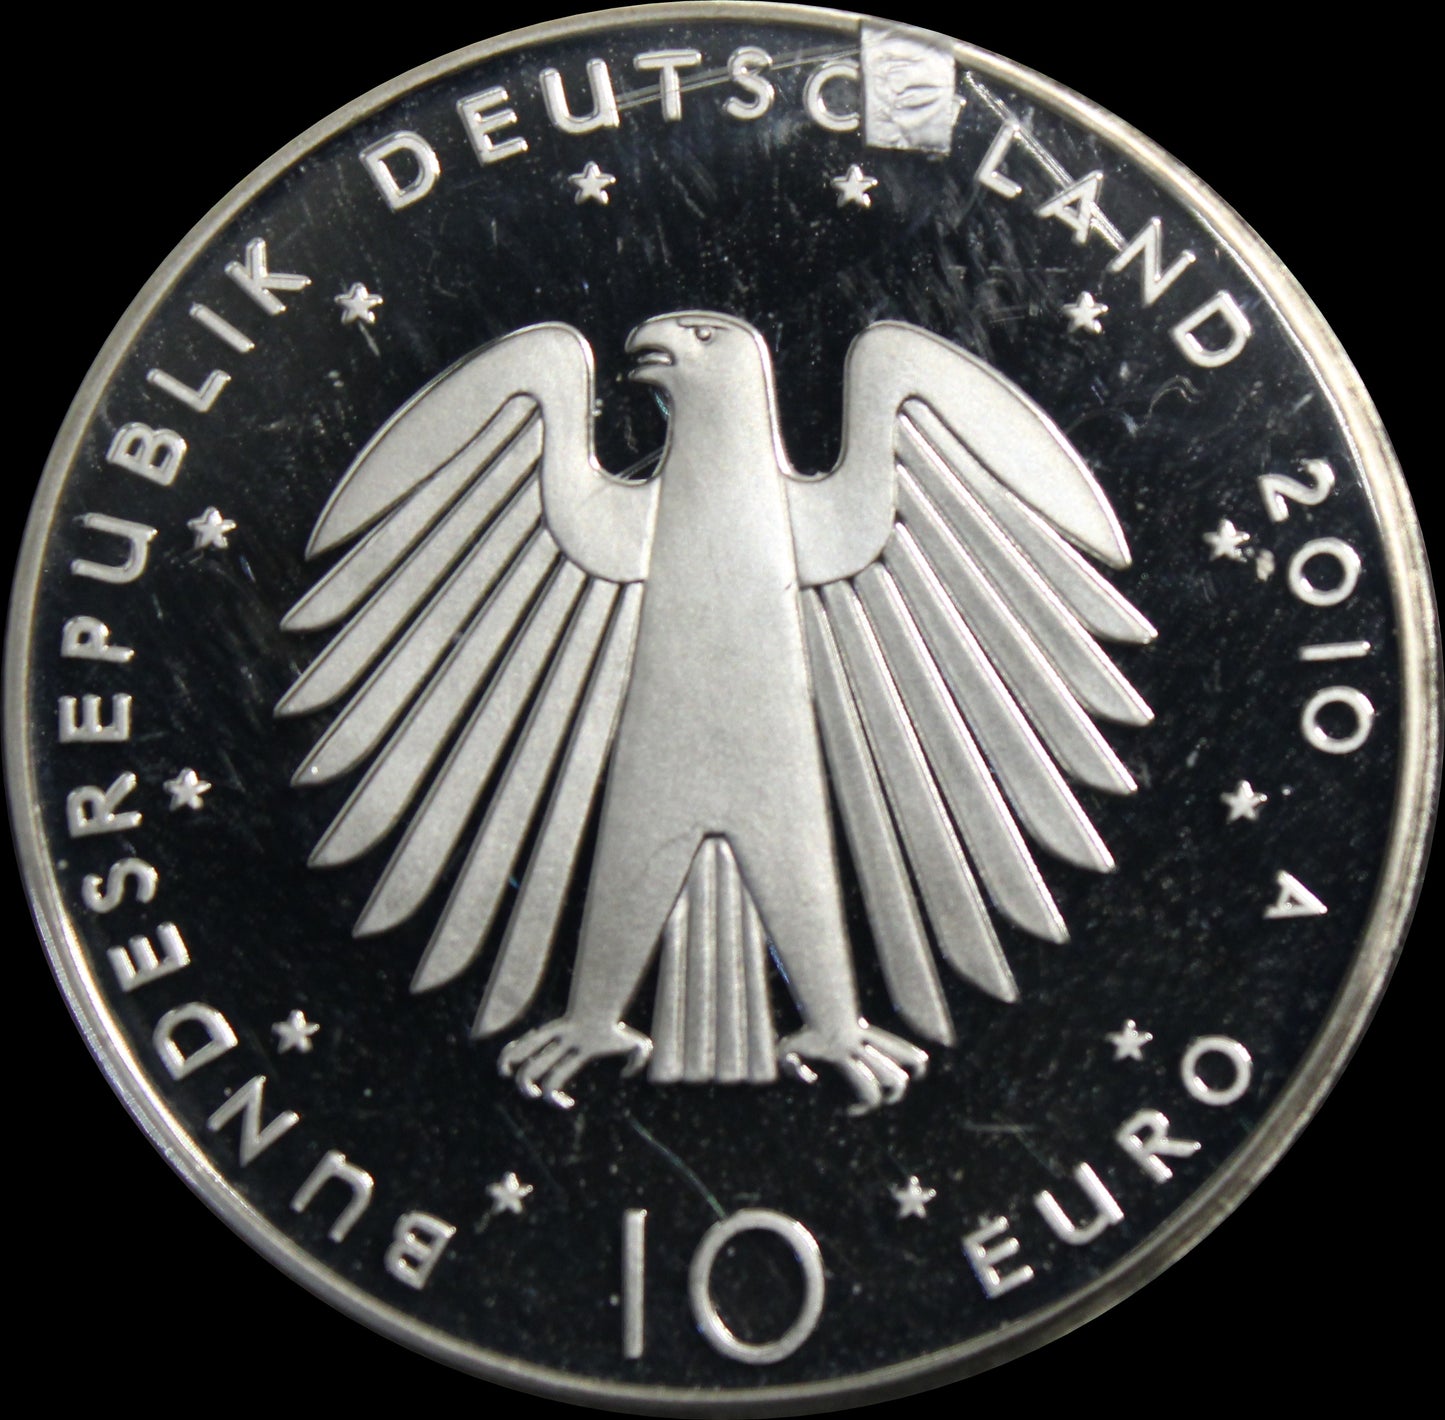 20 JHARE DEUTSCHE EINHEIT, Serie 10 € Silber Gedenkmünzen Deutschland, Spiegelglanz, 2010